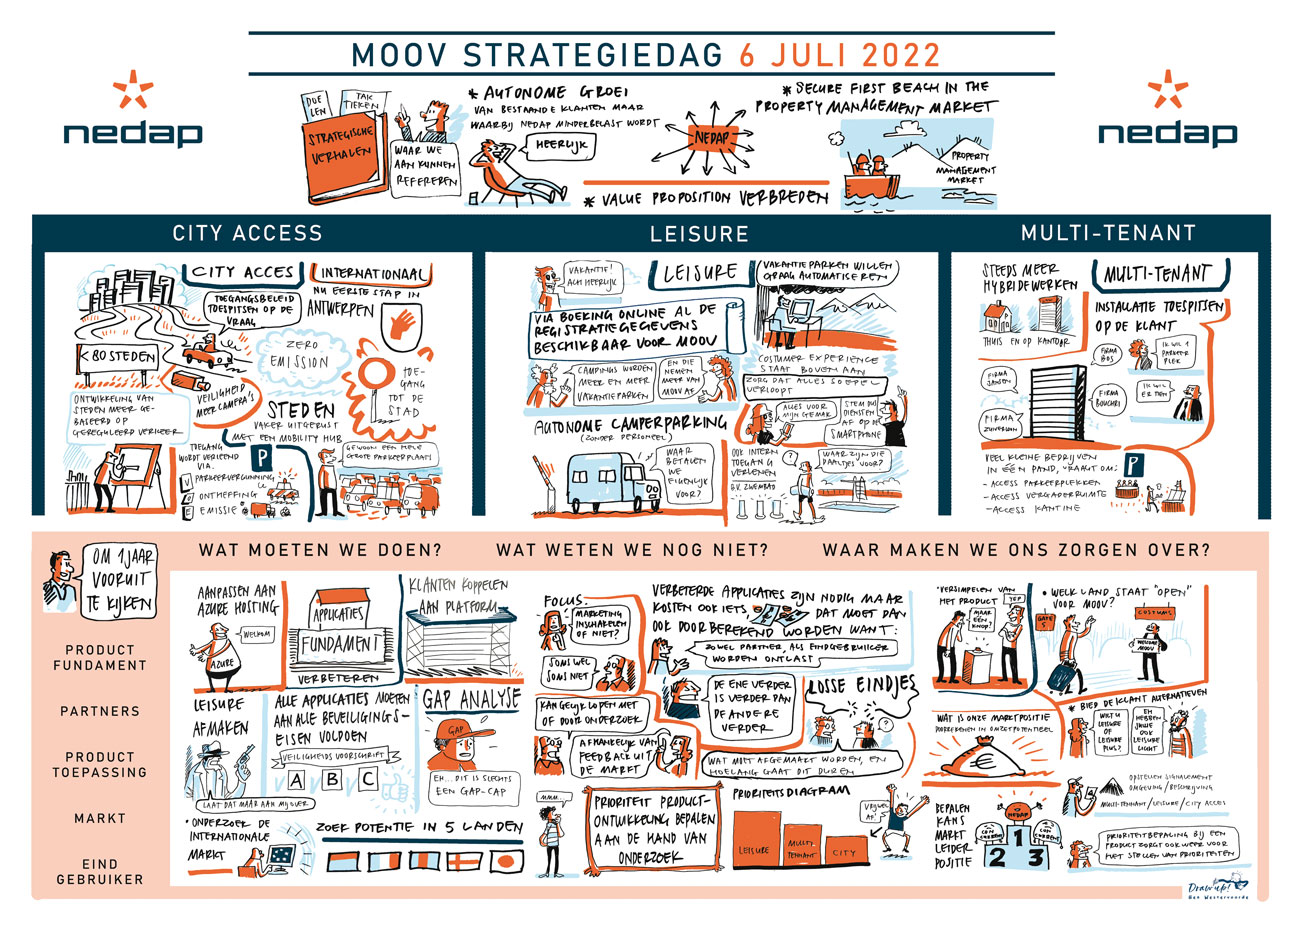 "Een boeiende reis door de Nedap MOOV Strategiedag: Stadsbereik, Vrije tijd en Multi-Tenant innovatie in beeld gebracht."